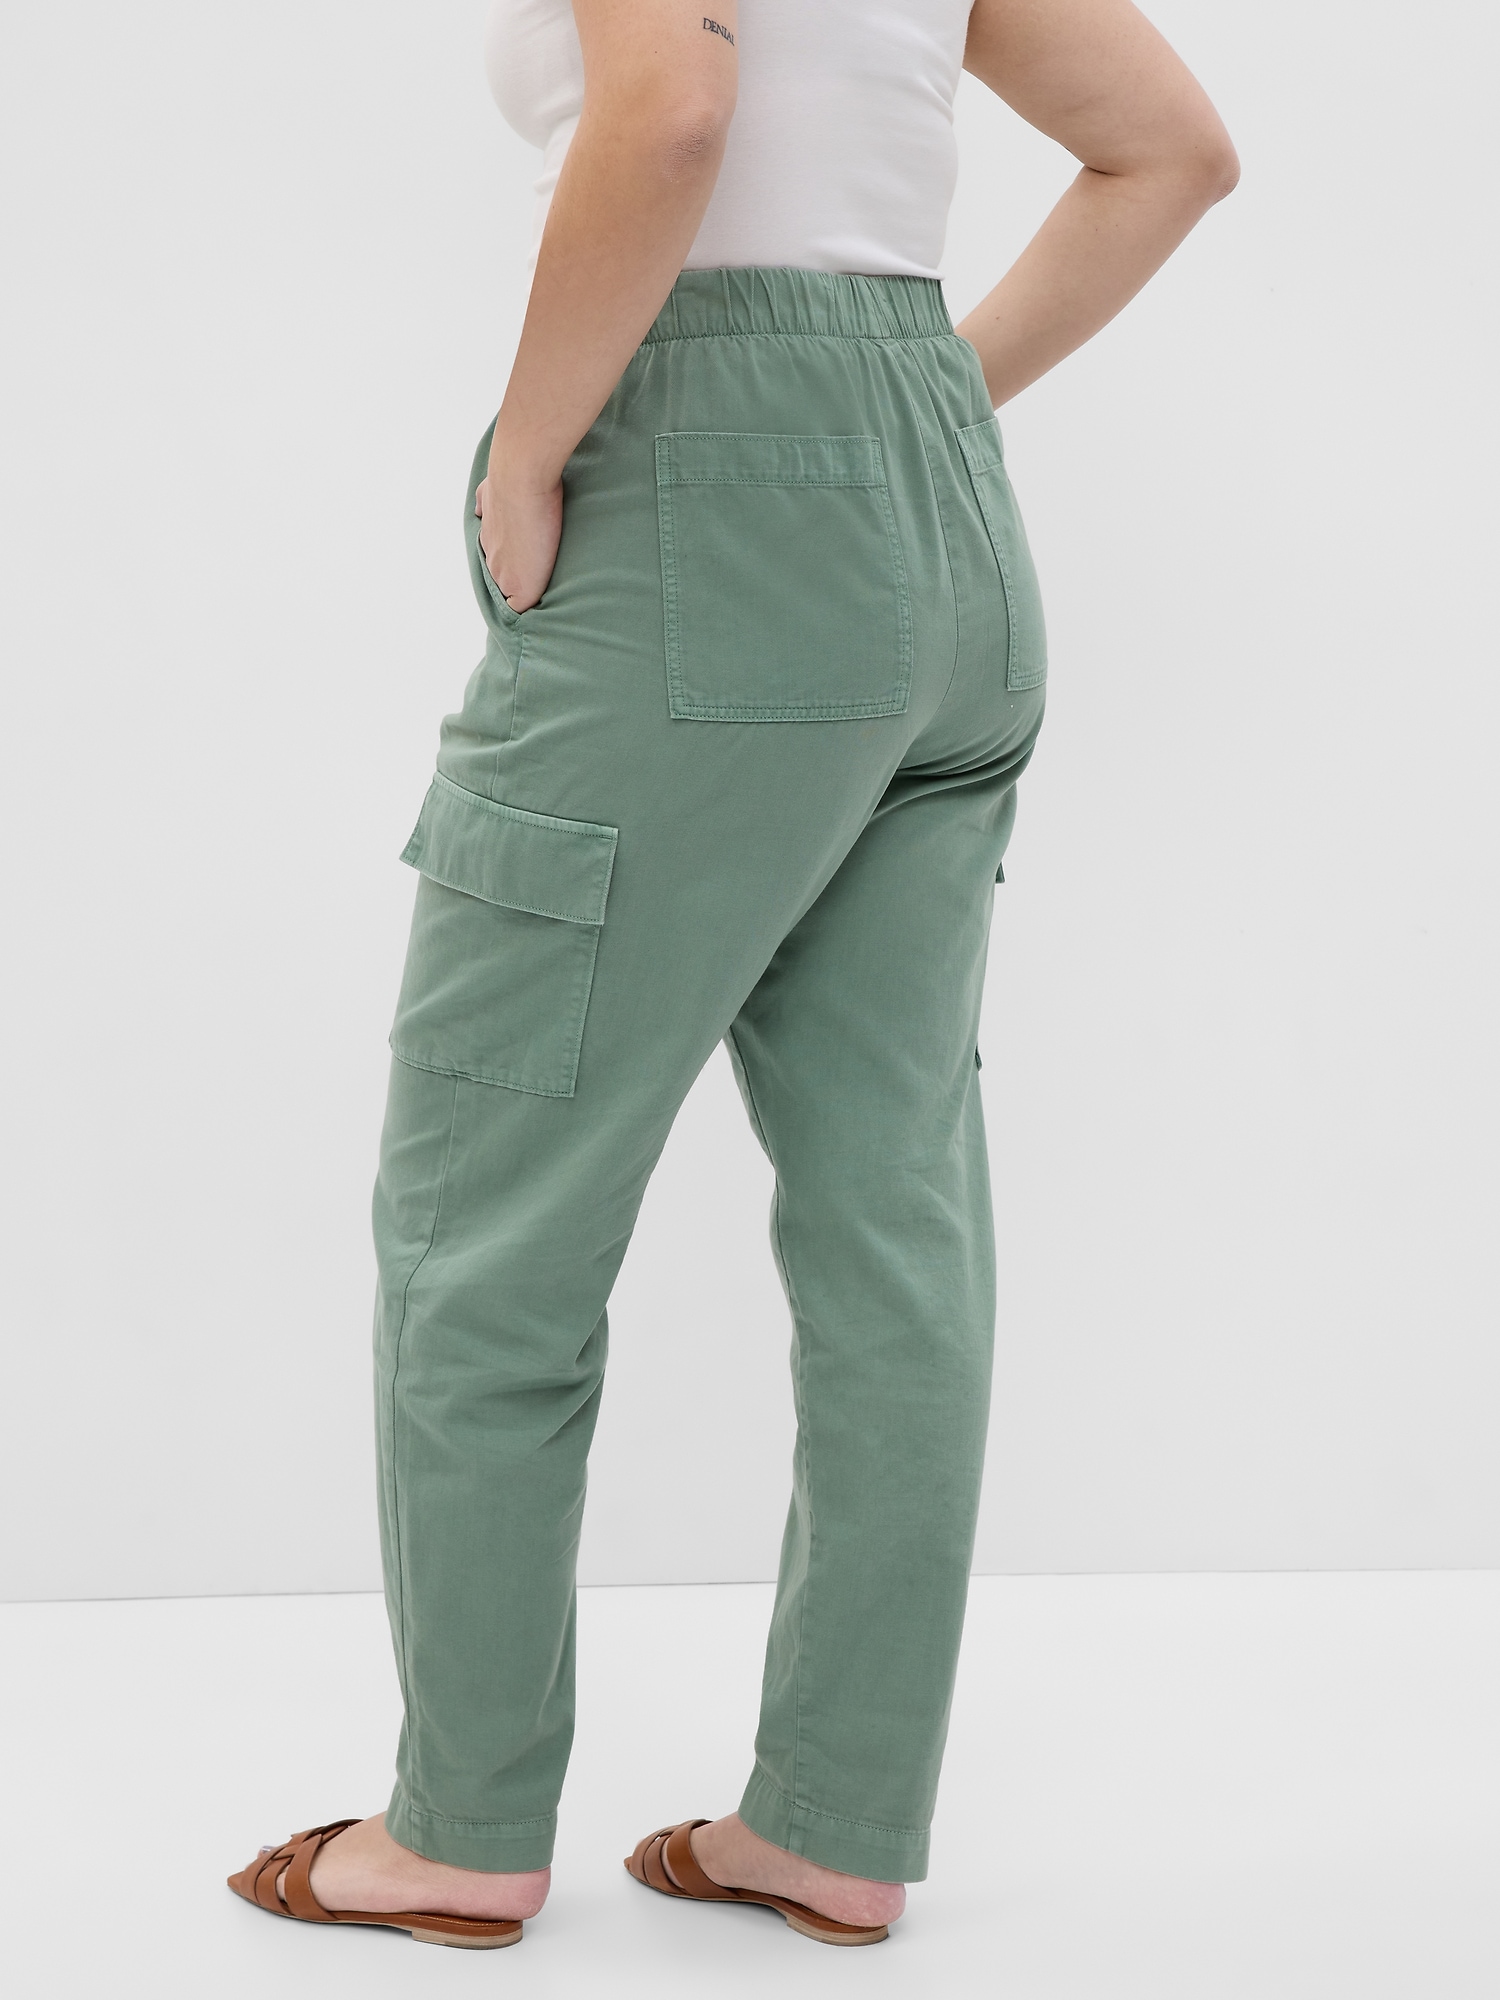 women s cargo pants